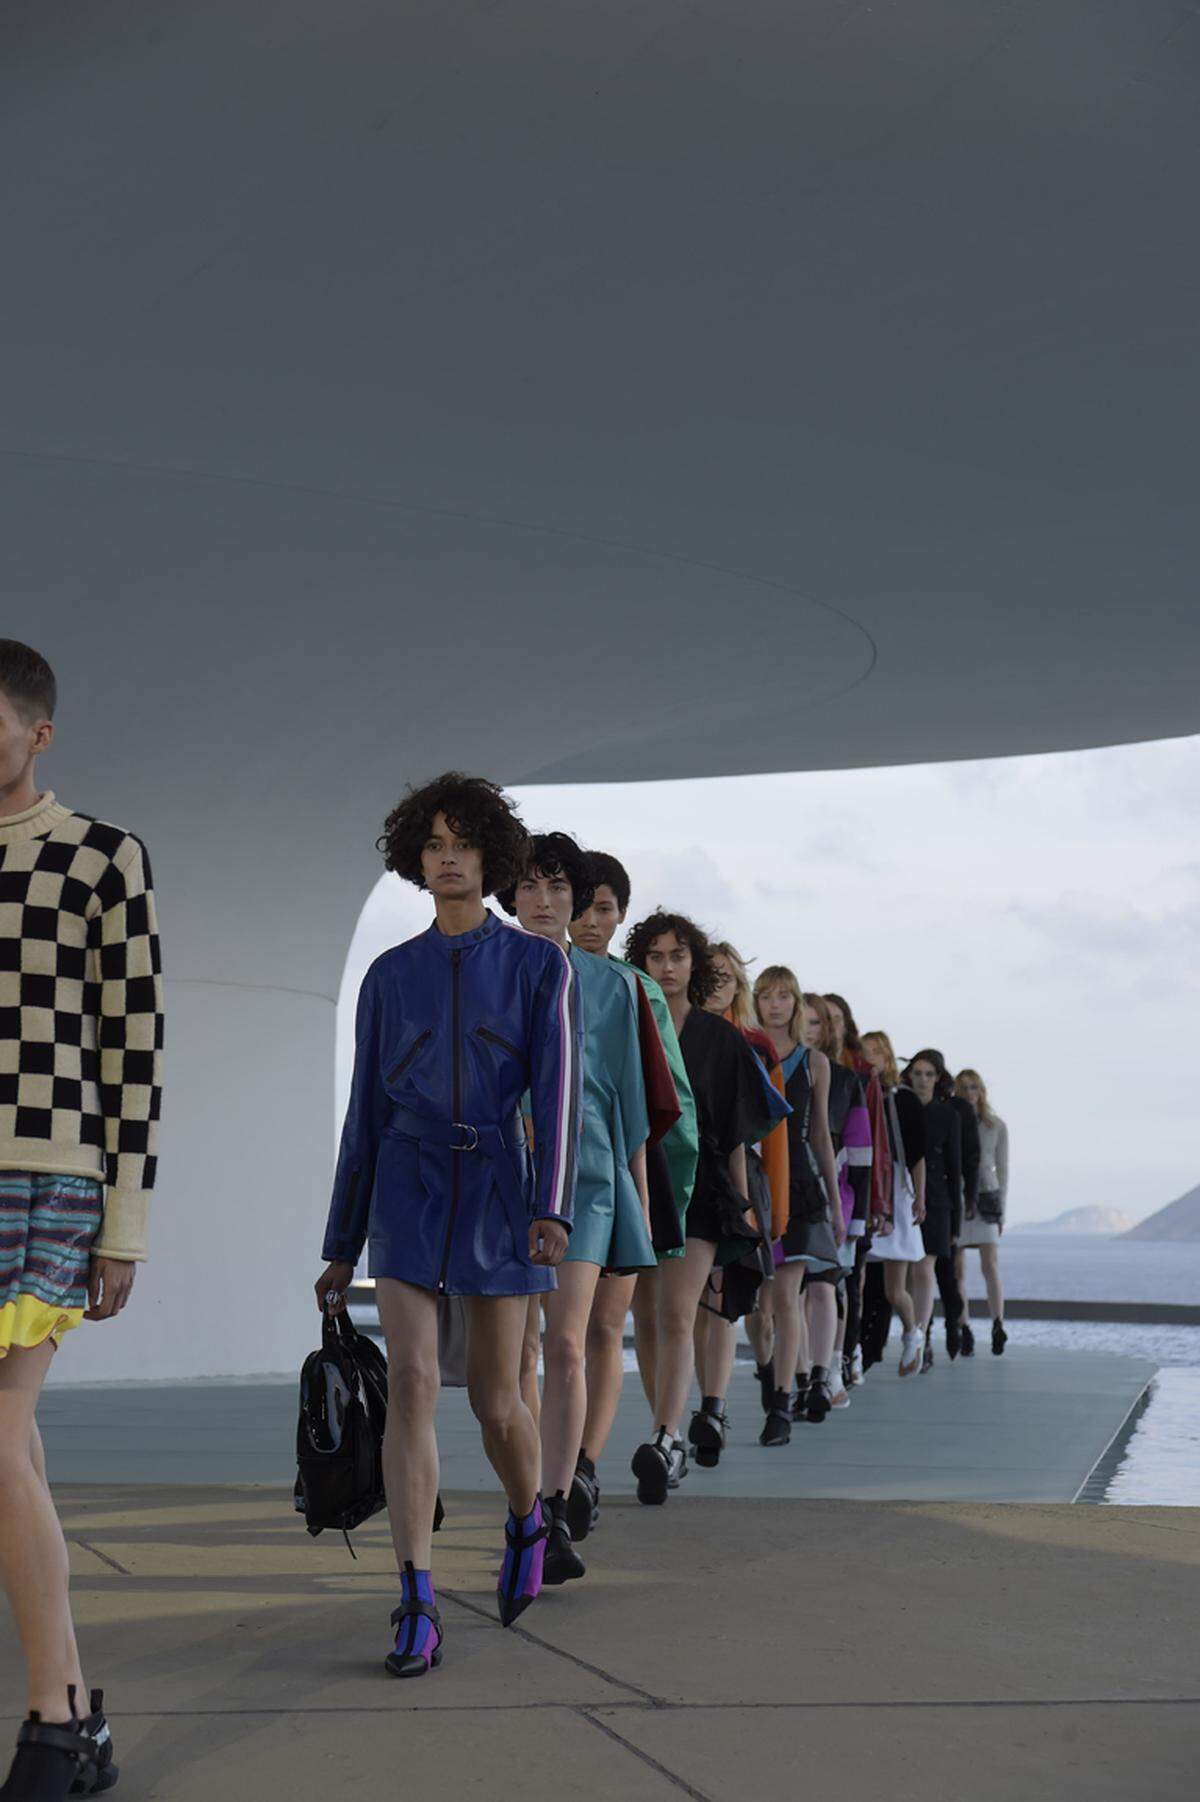 Modeschauen an tropischen Zielen abzuhalten, liegt momentan im Trend. Chanel hat erst kürzlich in Kuba seine neueste Kollektion präsentiert.